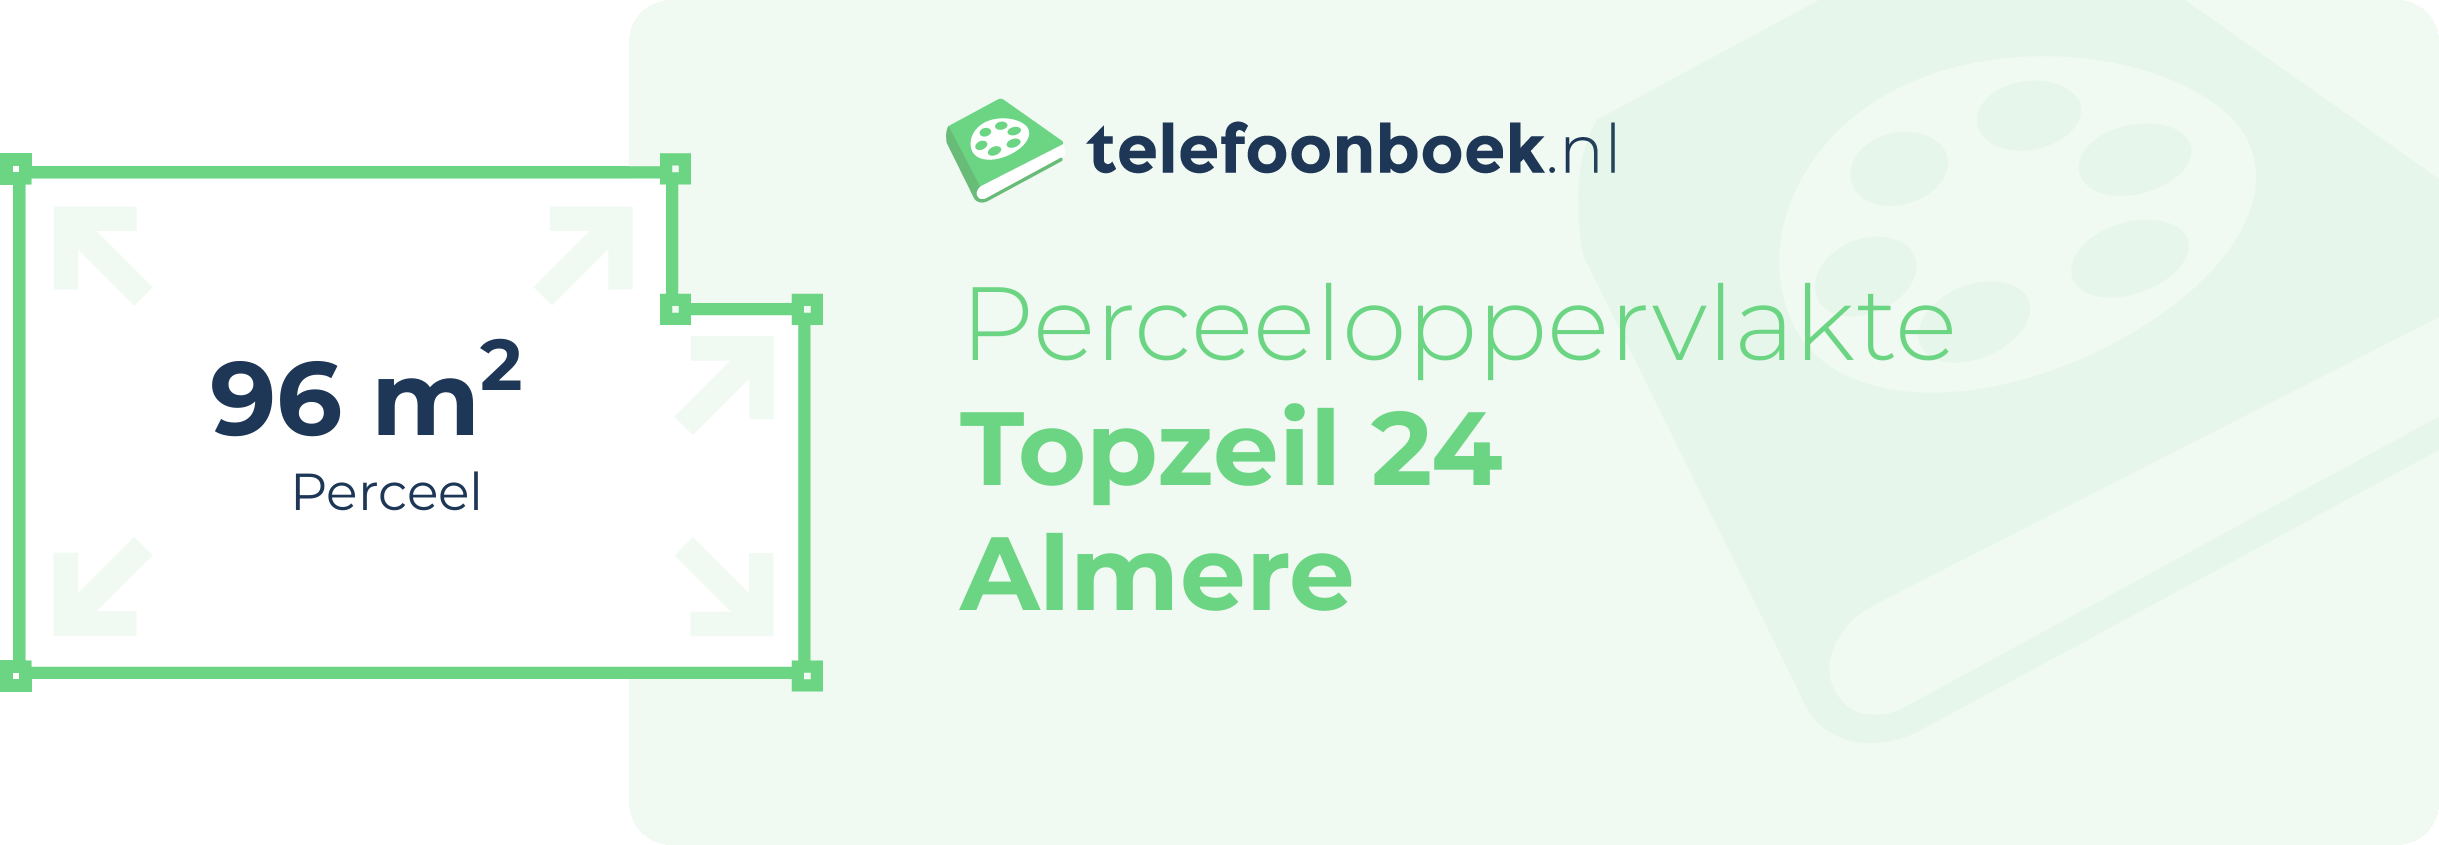 Perceeloppervlakte Topzeil 24 Almere